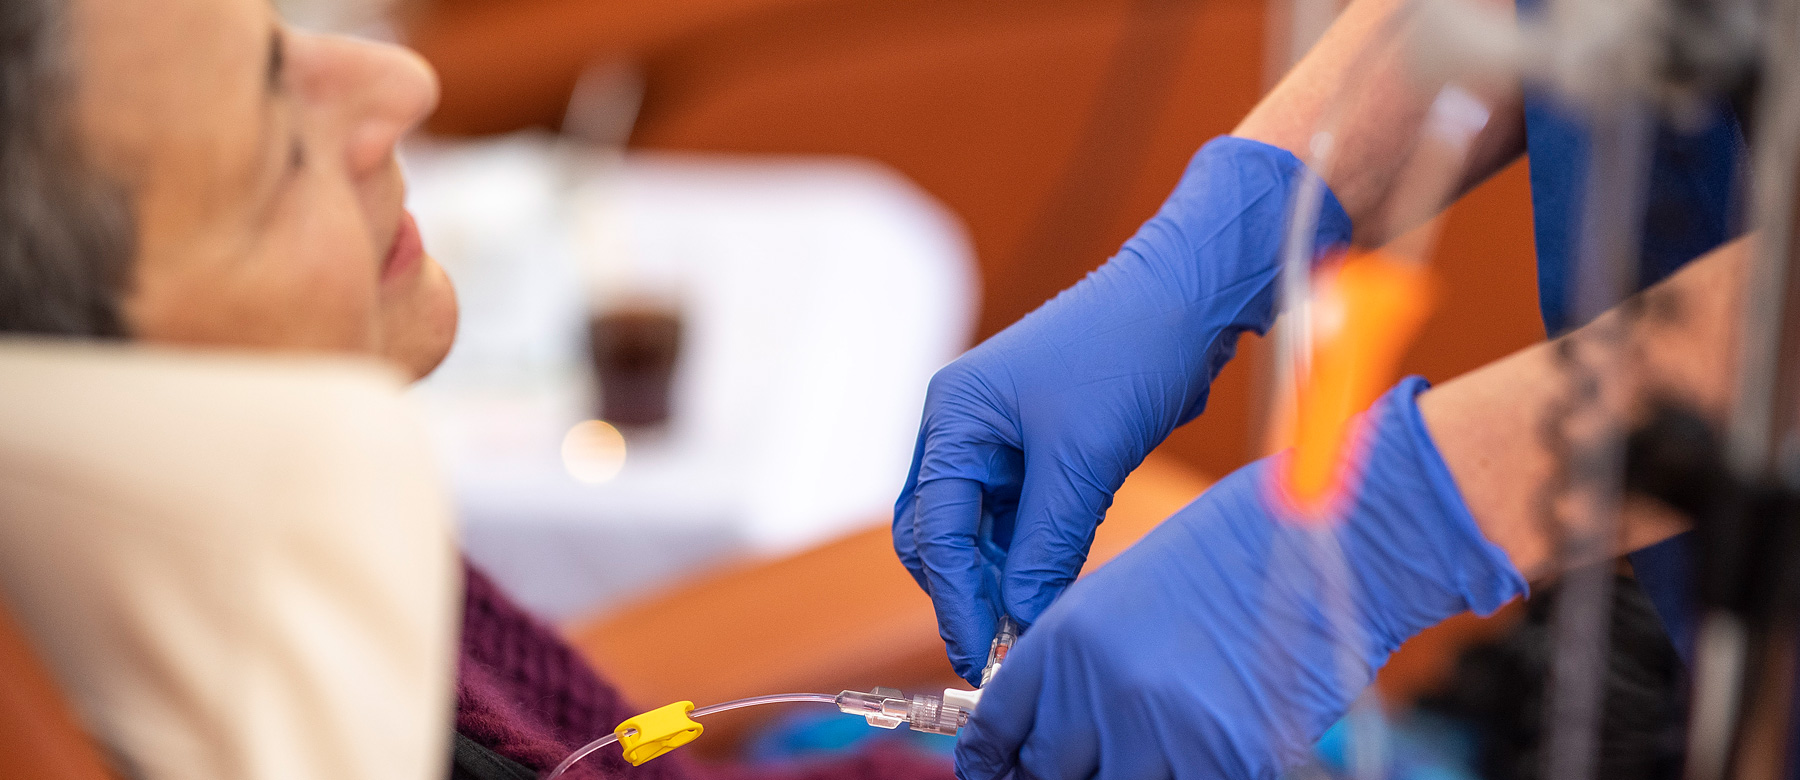 Mitarbeiterin der onkologischen Ambulanz legt einer Patienten eine Chemotherapieinfusion.